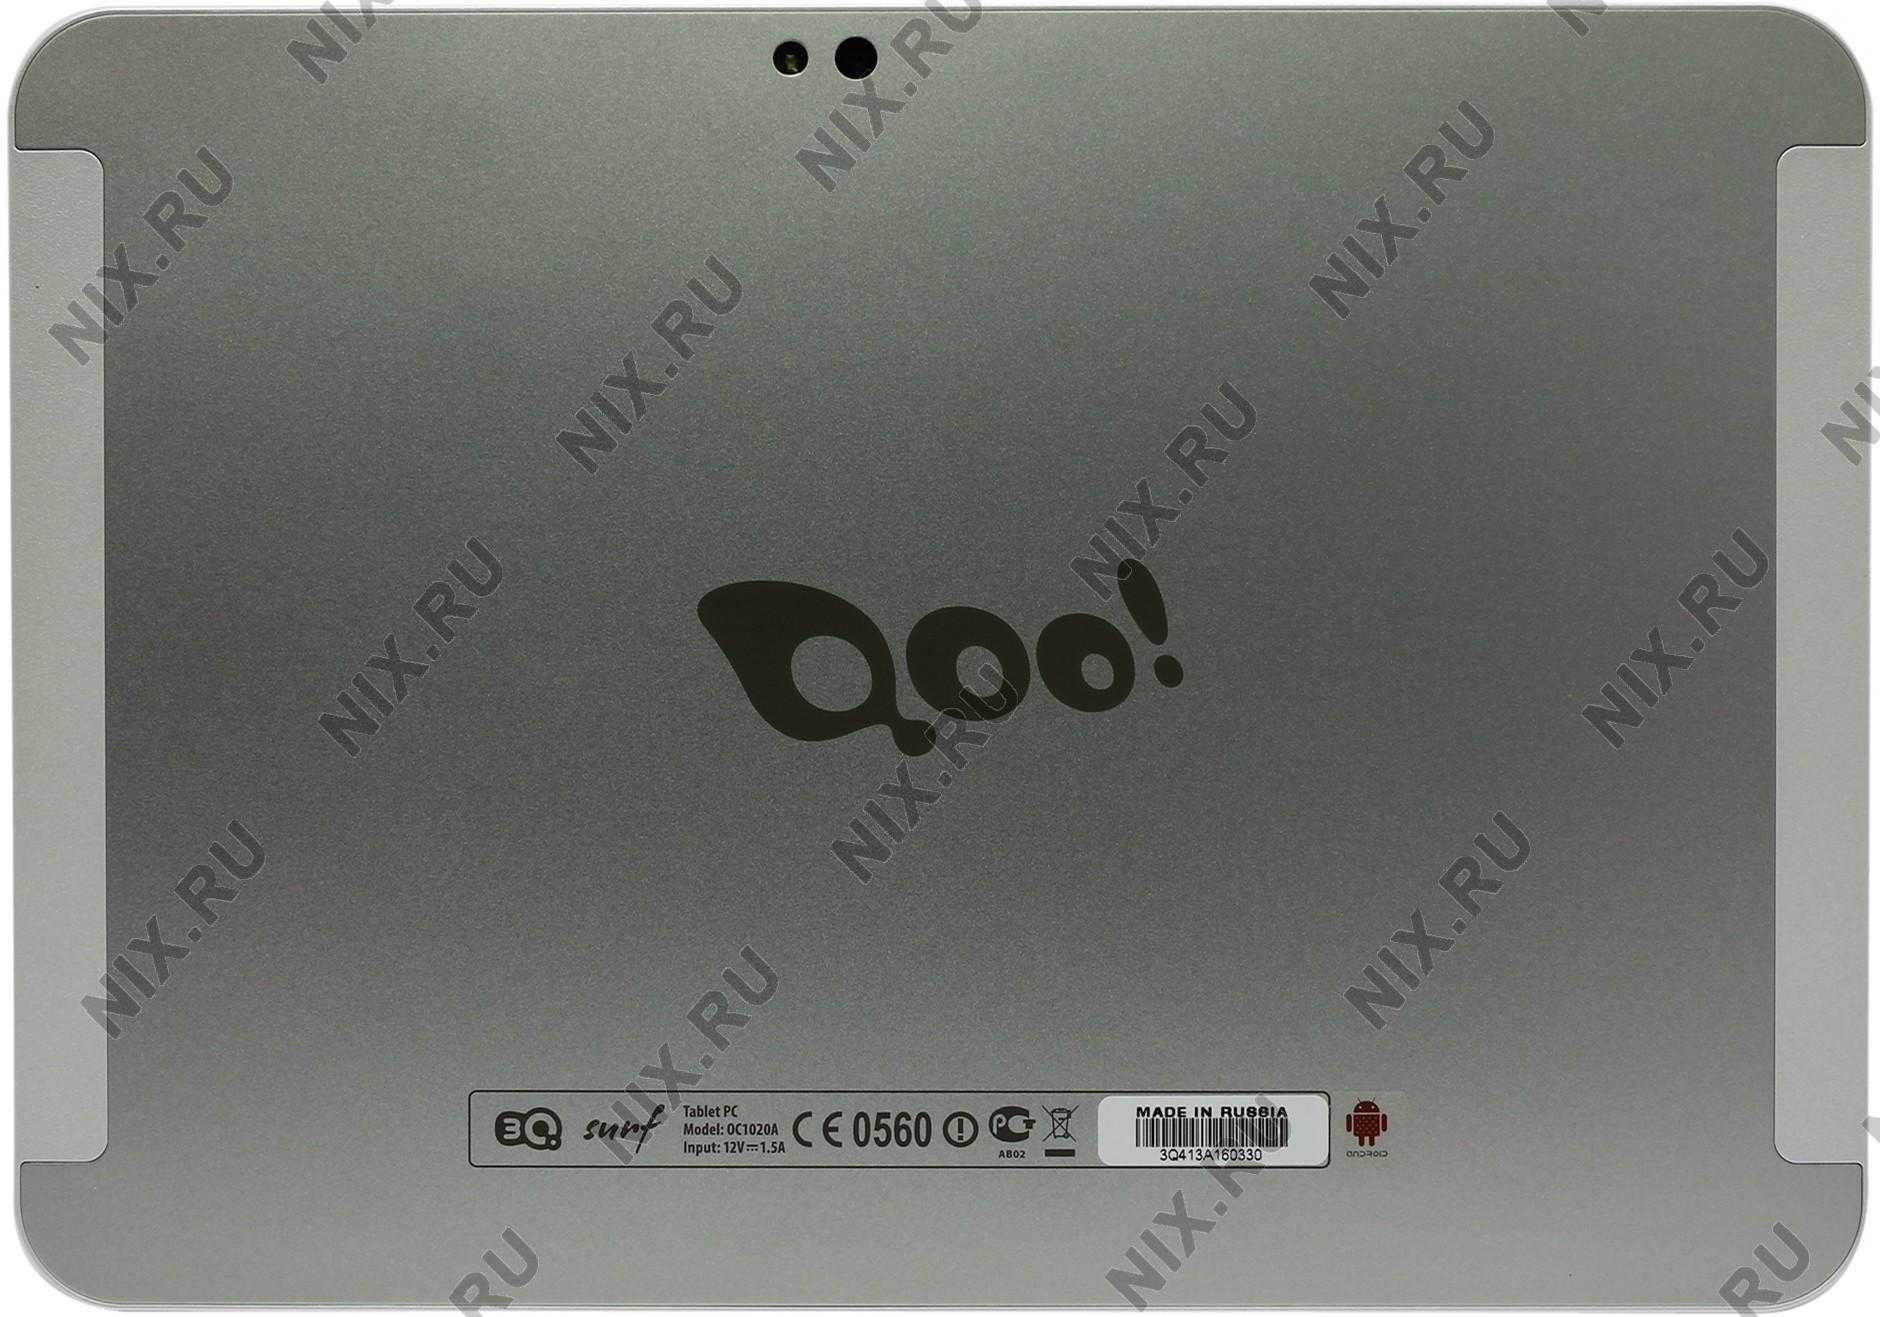 Замена экрана планшета 3q surf ts1003t 16 гб wifi черный — купить, цена и характеристики, отзывы